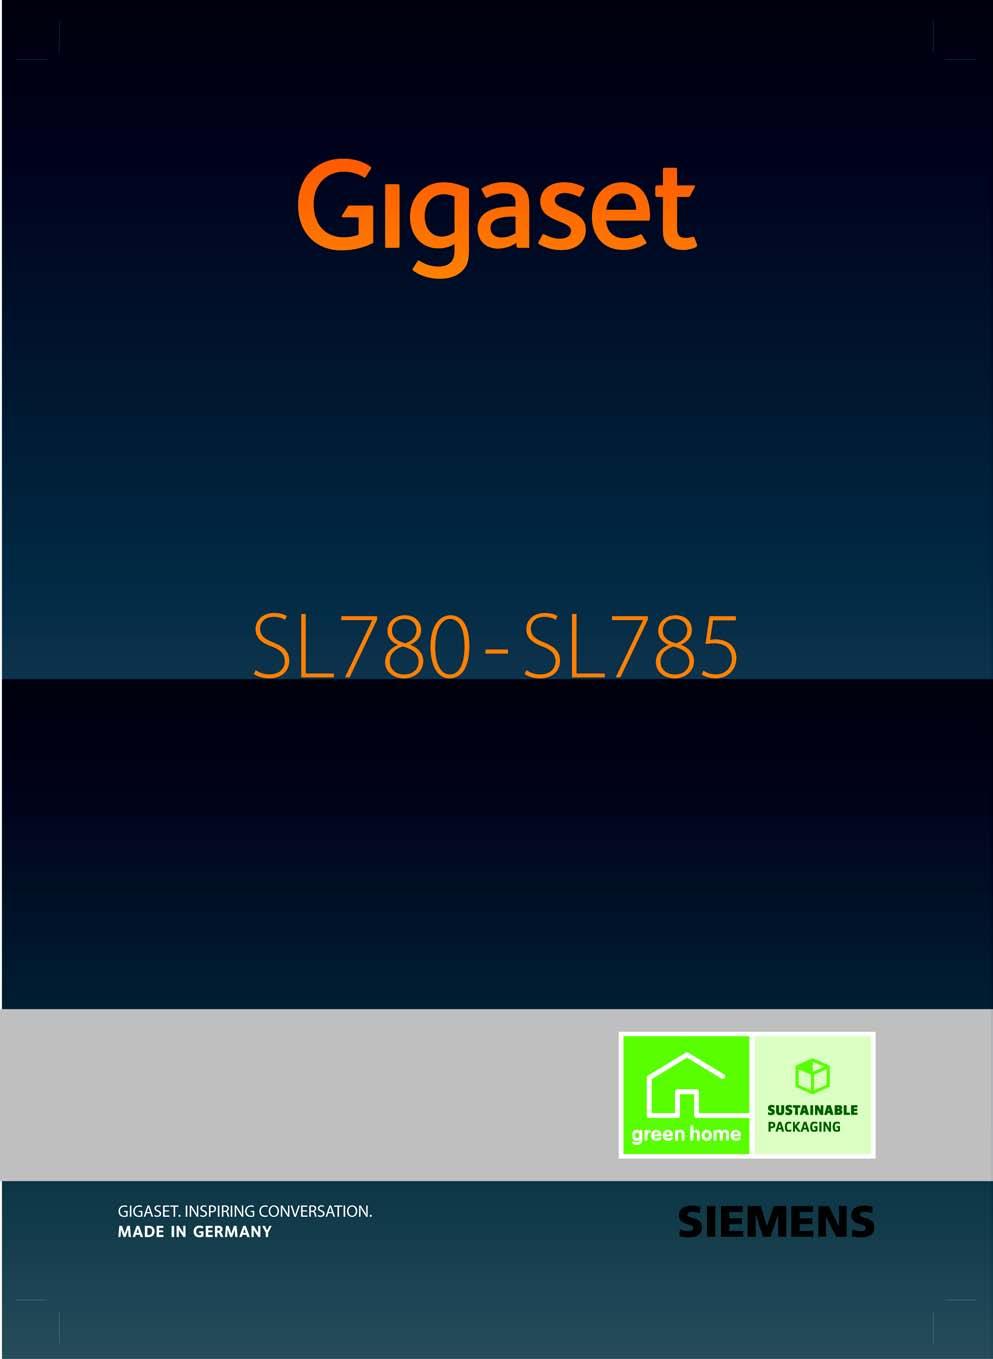 Congratulazioni Acquistando un prodotto Gigaset avete scelto un marchio estremamente sensibile ed attento alle tematiche della